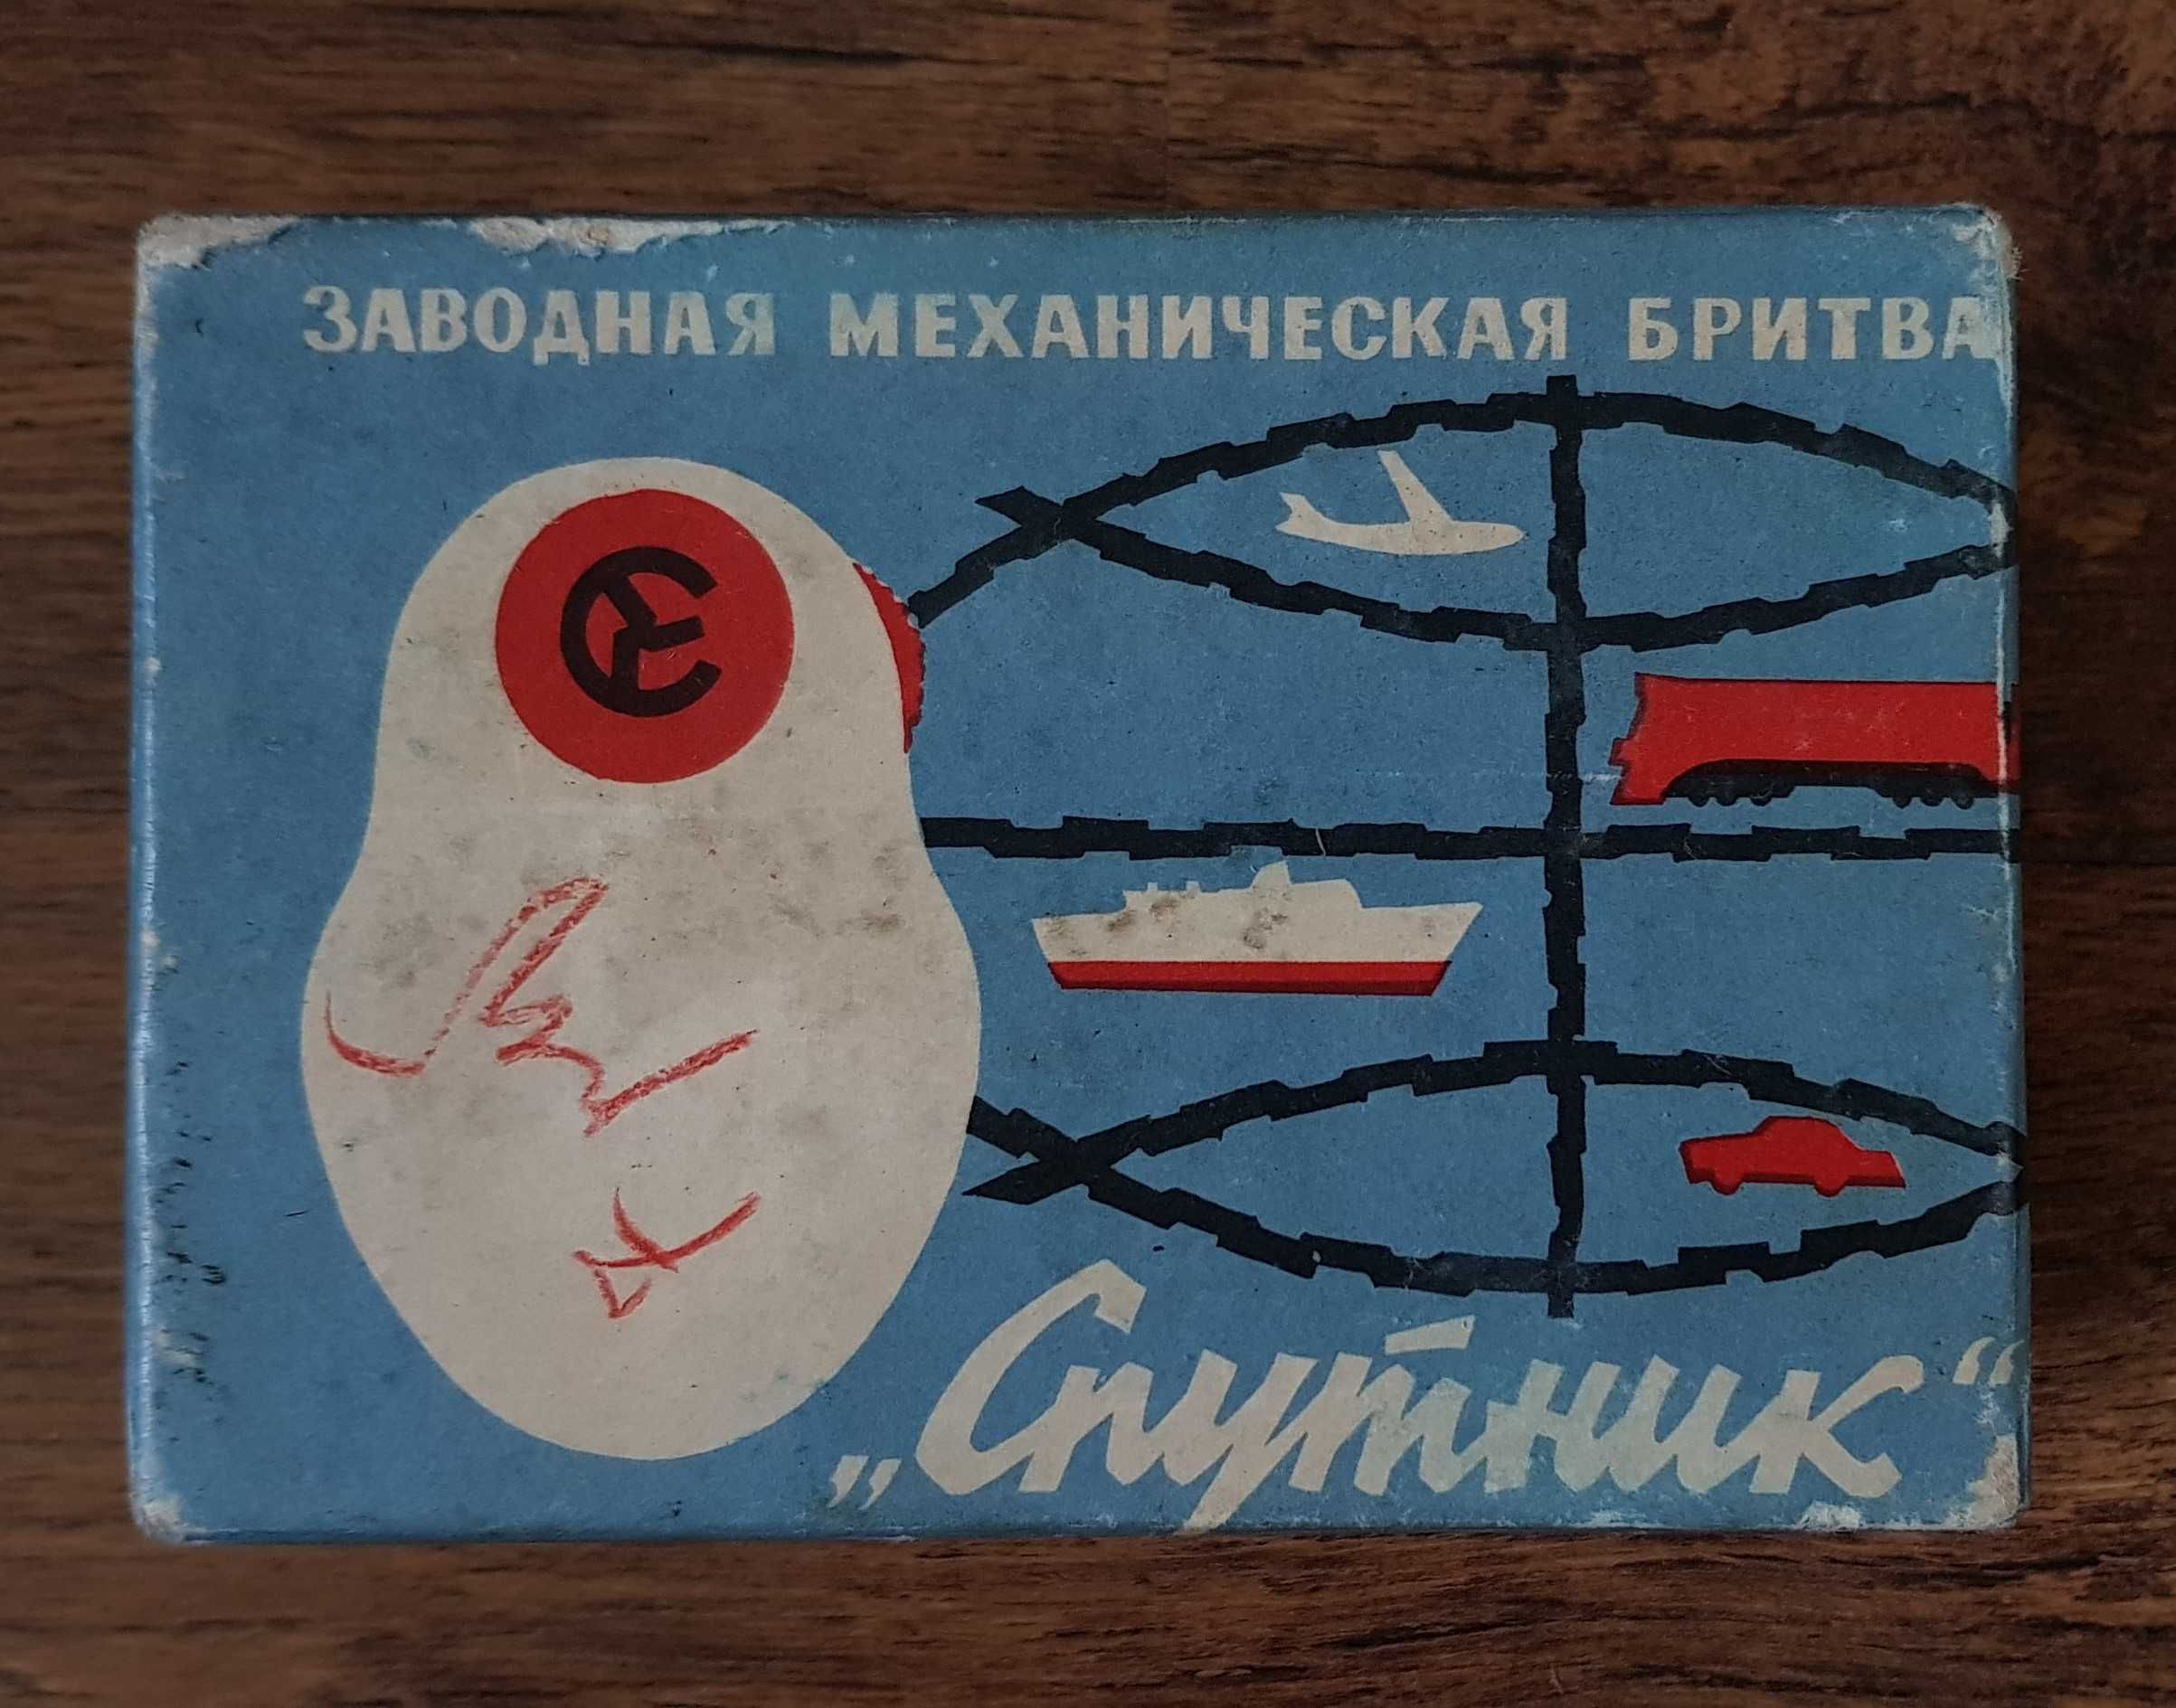 Maszynka do golenia "Sputnik", mechaniczna, lata 60. XX w.